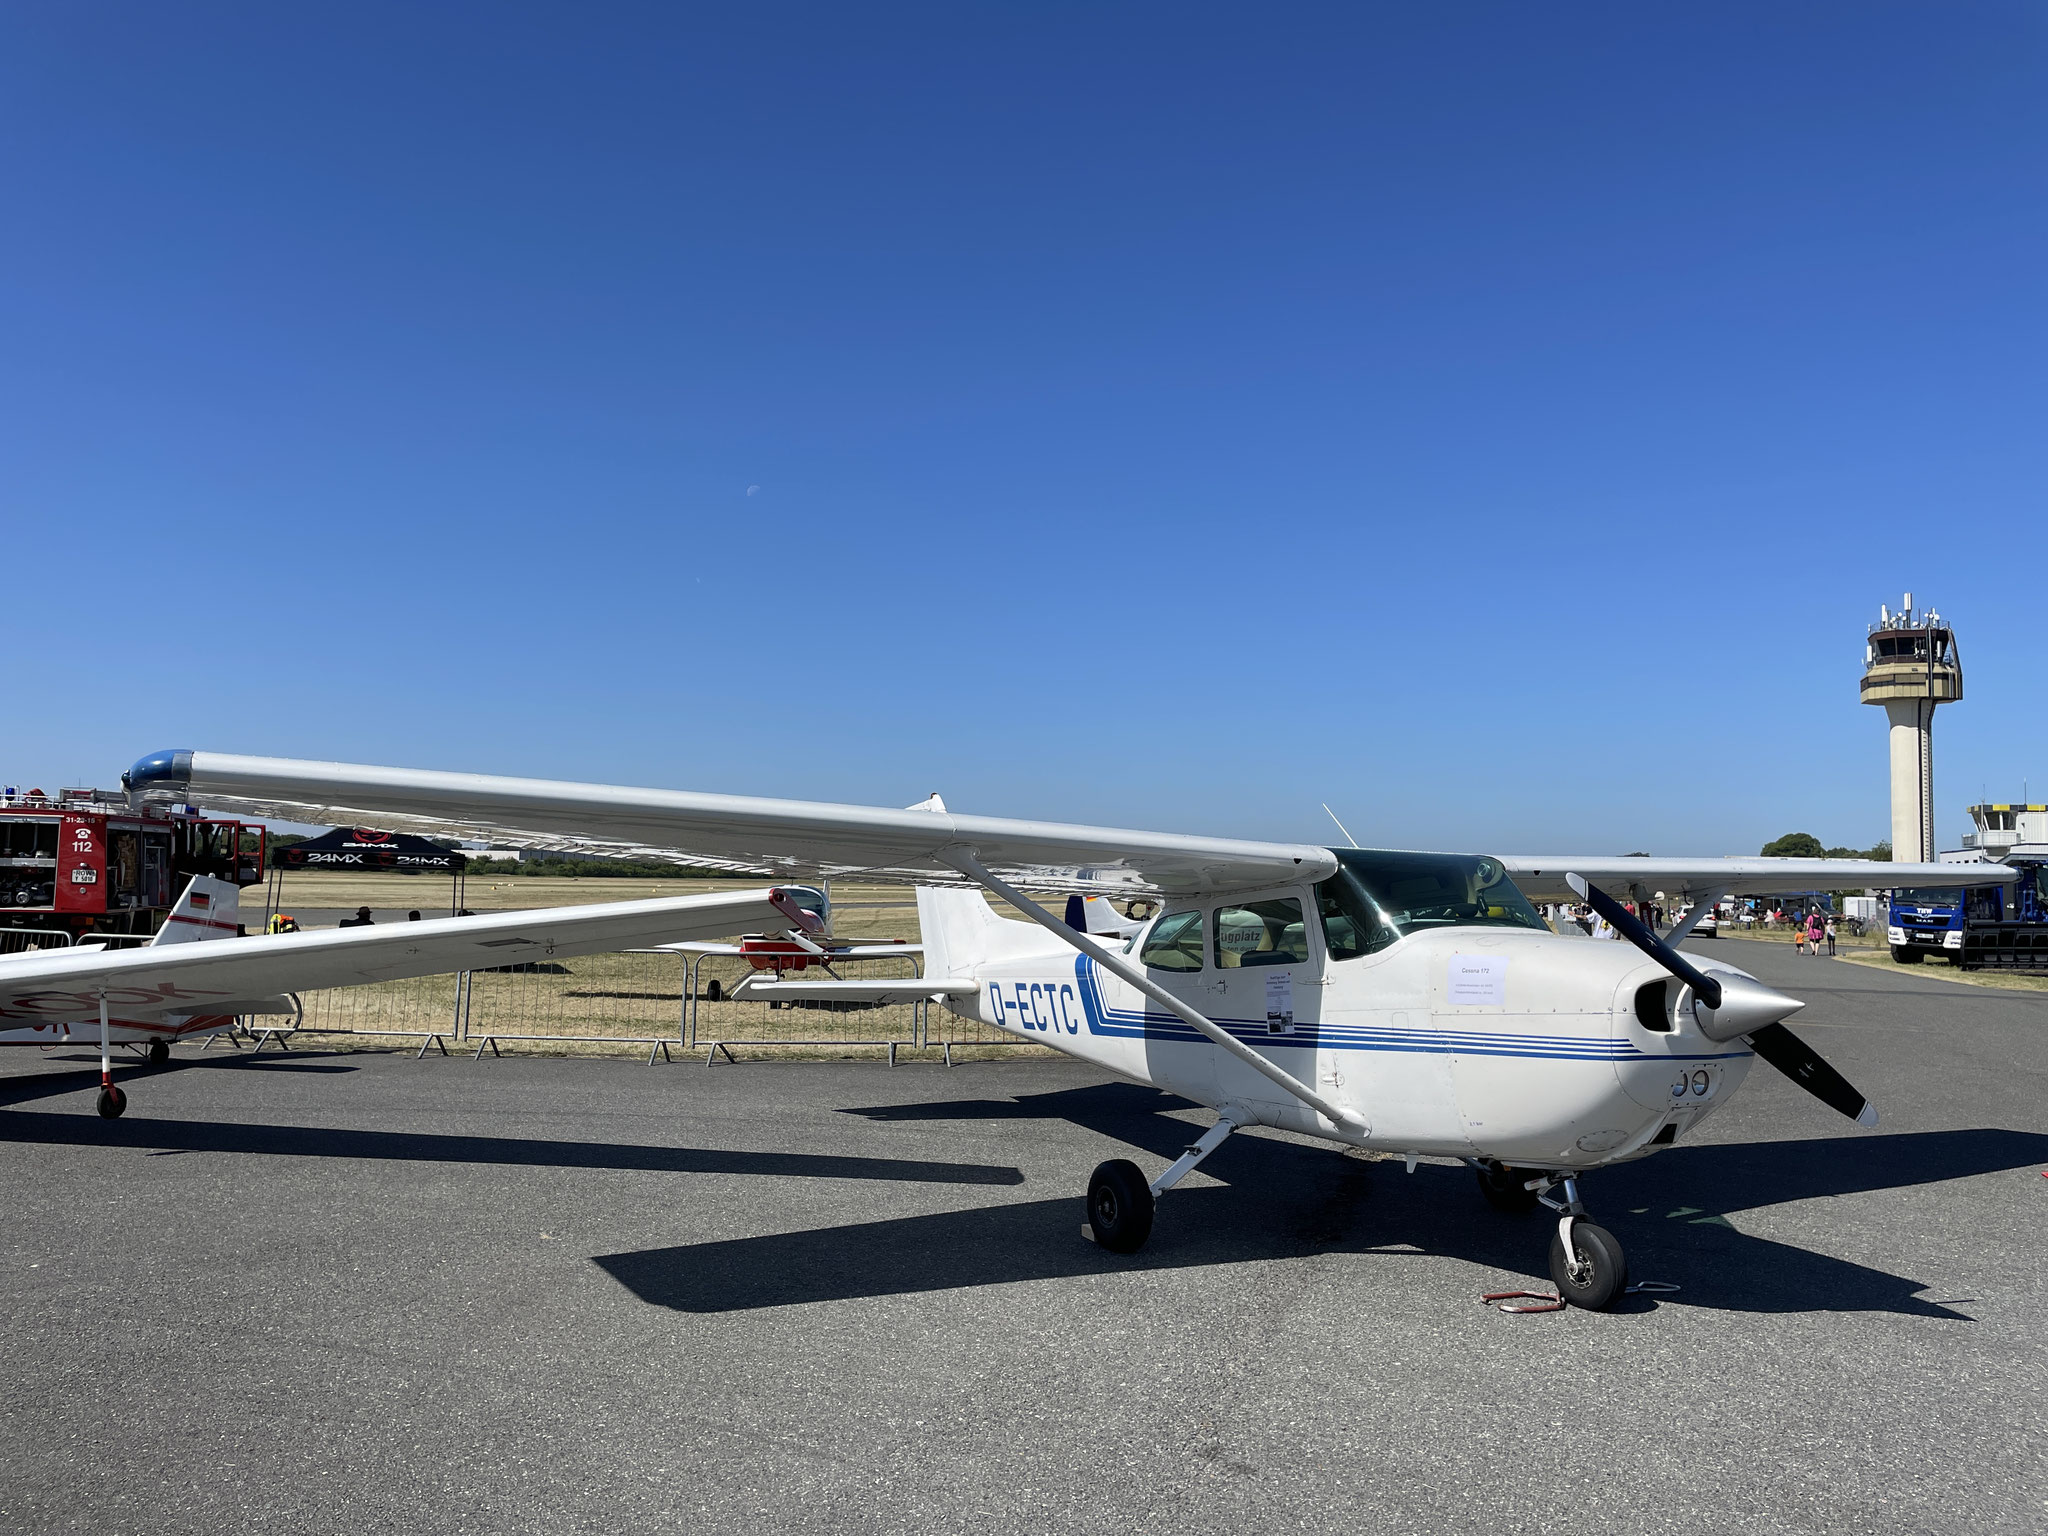 Zuverlässig und ökonomisch: Eine Cessna 172 ist für Rundflüge perfekt geeignet